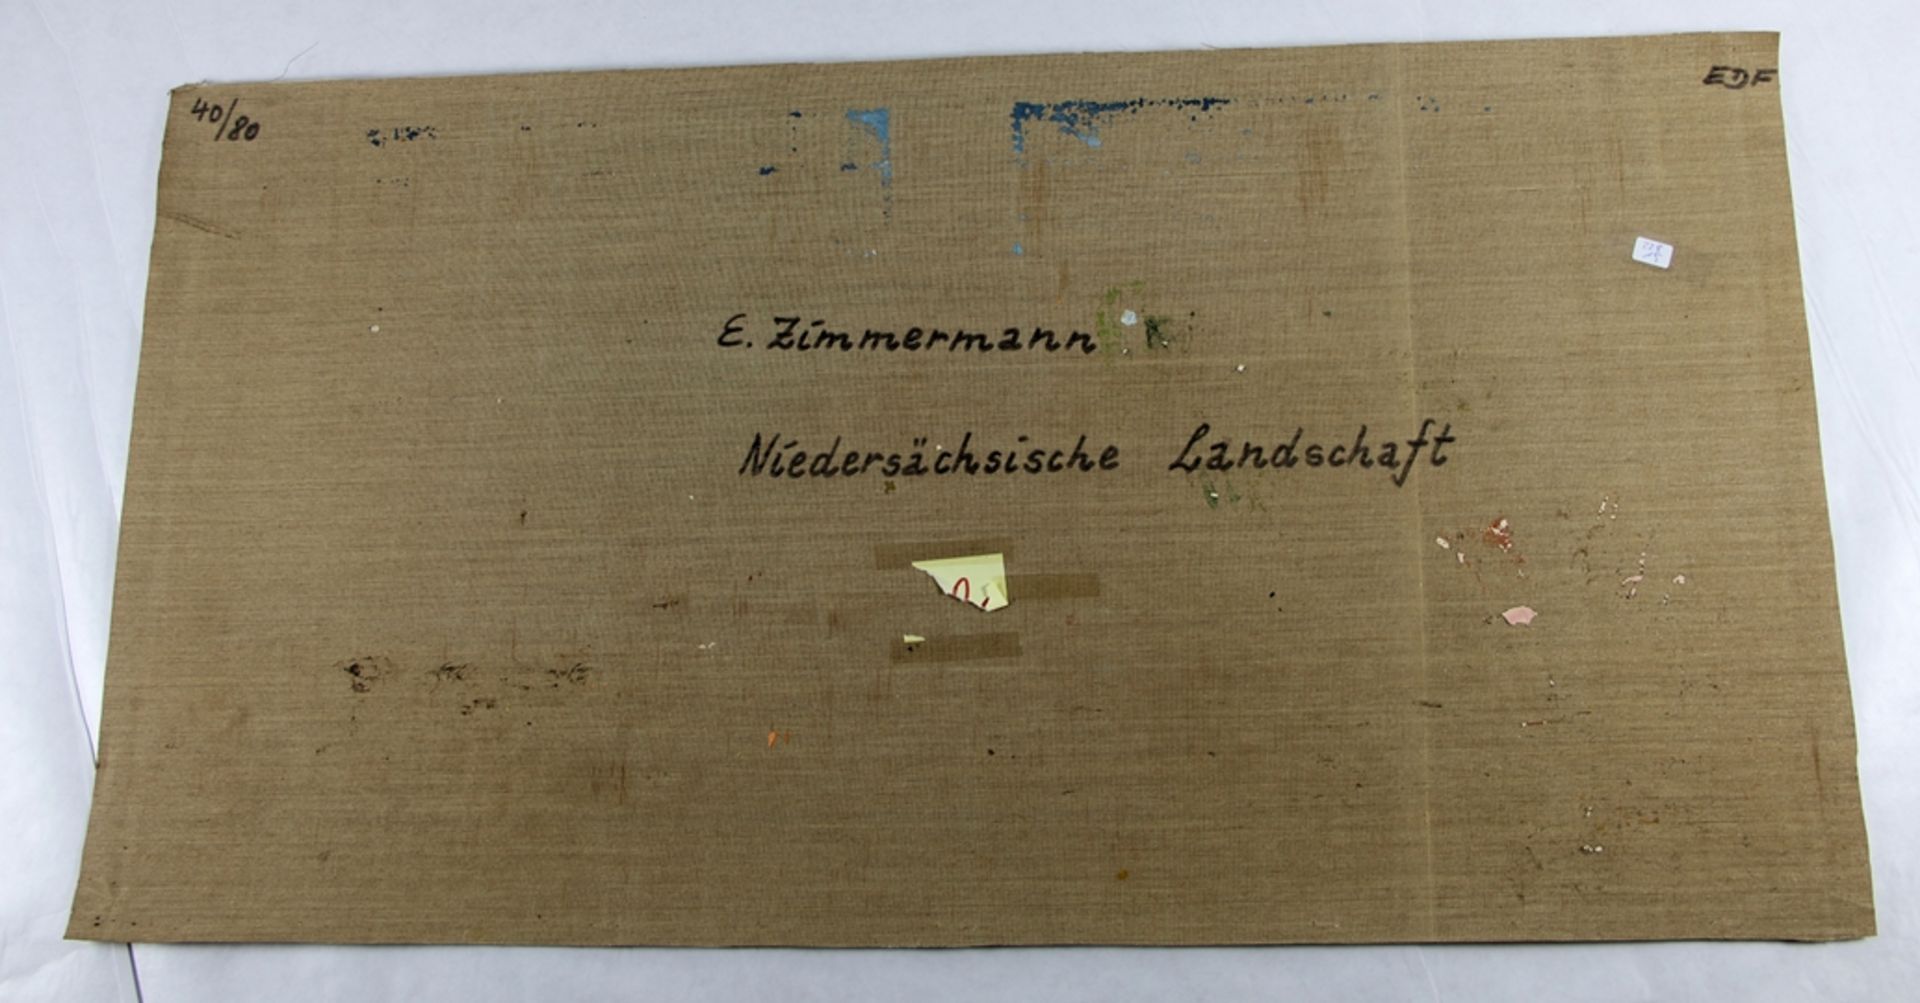 Zimmermann, Erich - Image 3 of 3